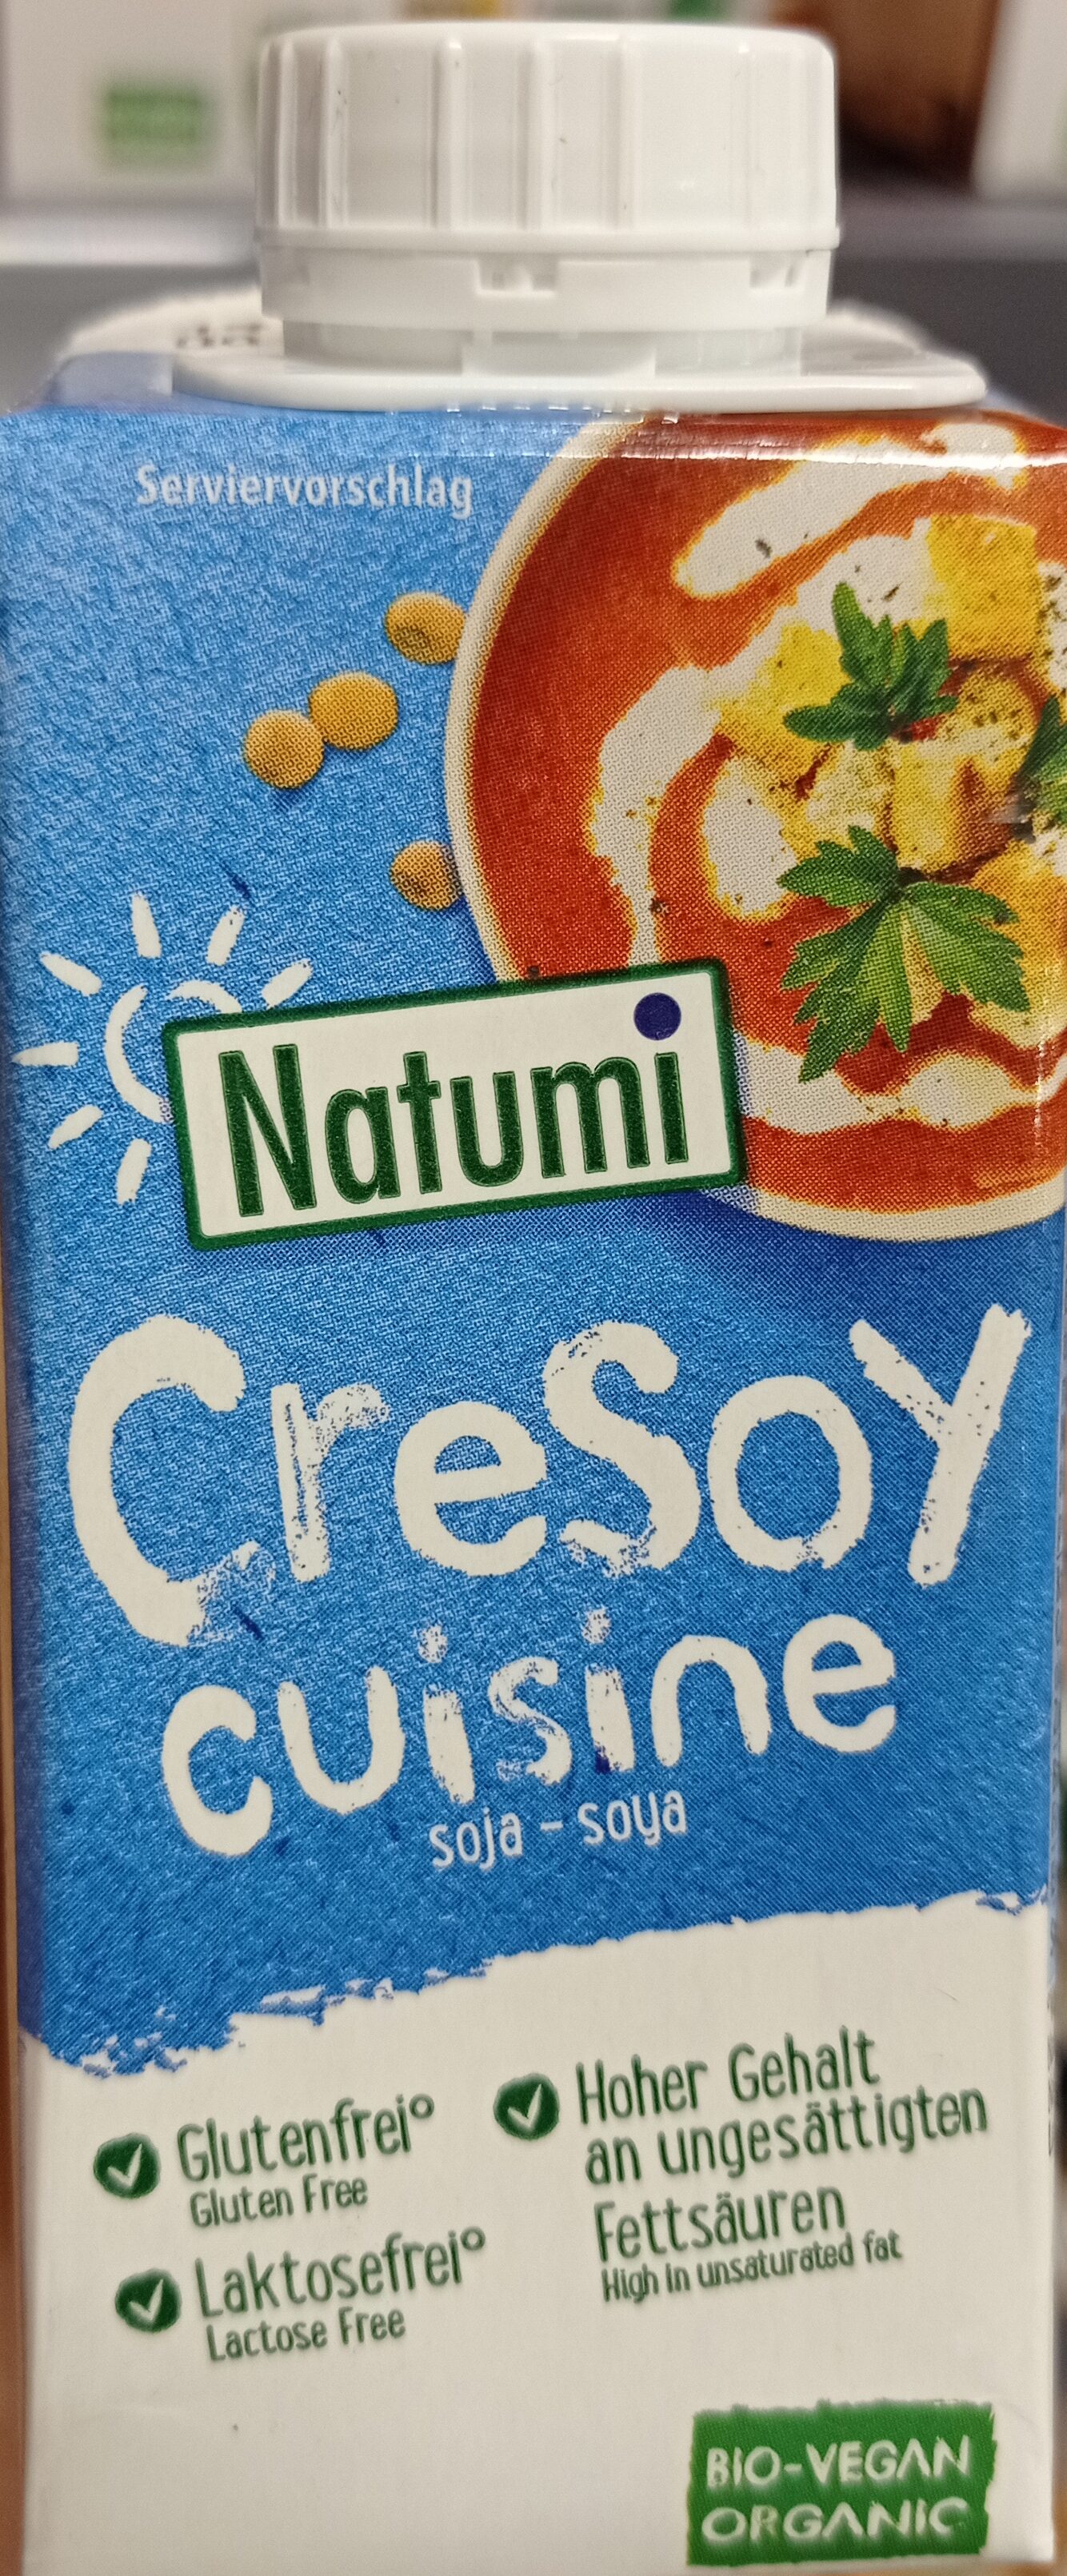 Cresoy soya - Product - de